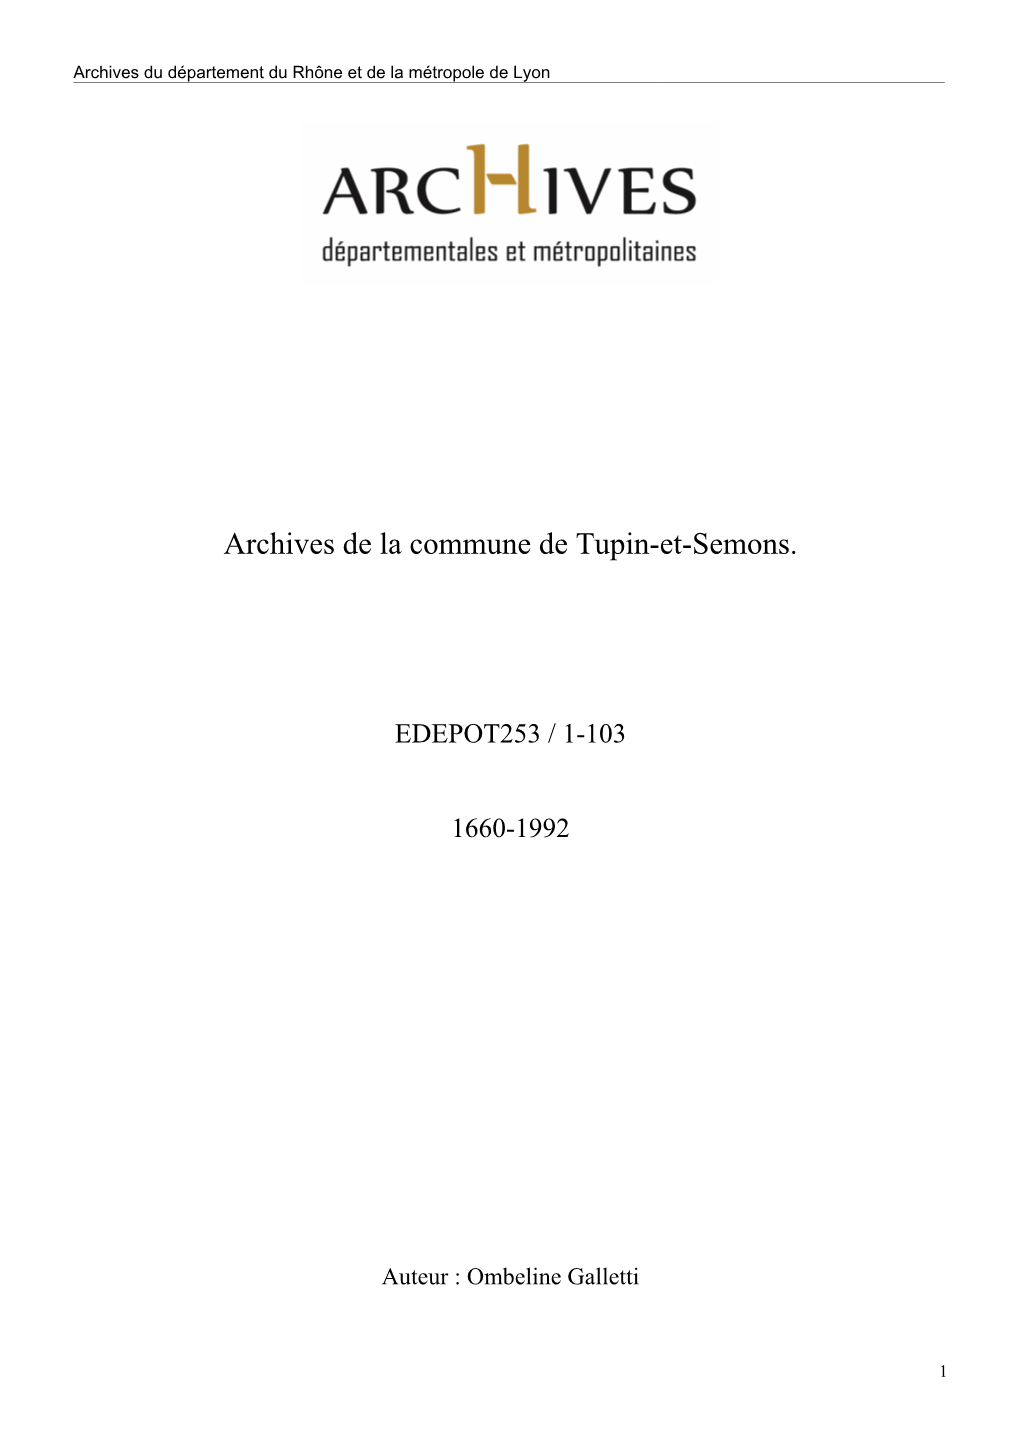 Archives De La Commune De Tupin-Et-Semons